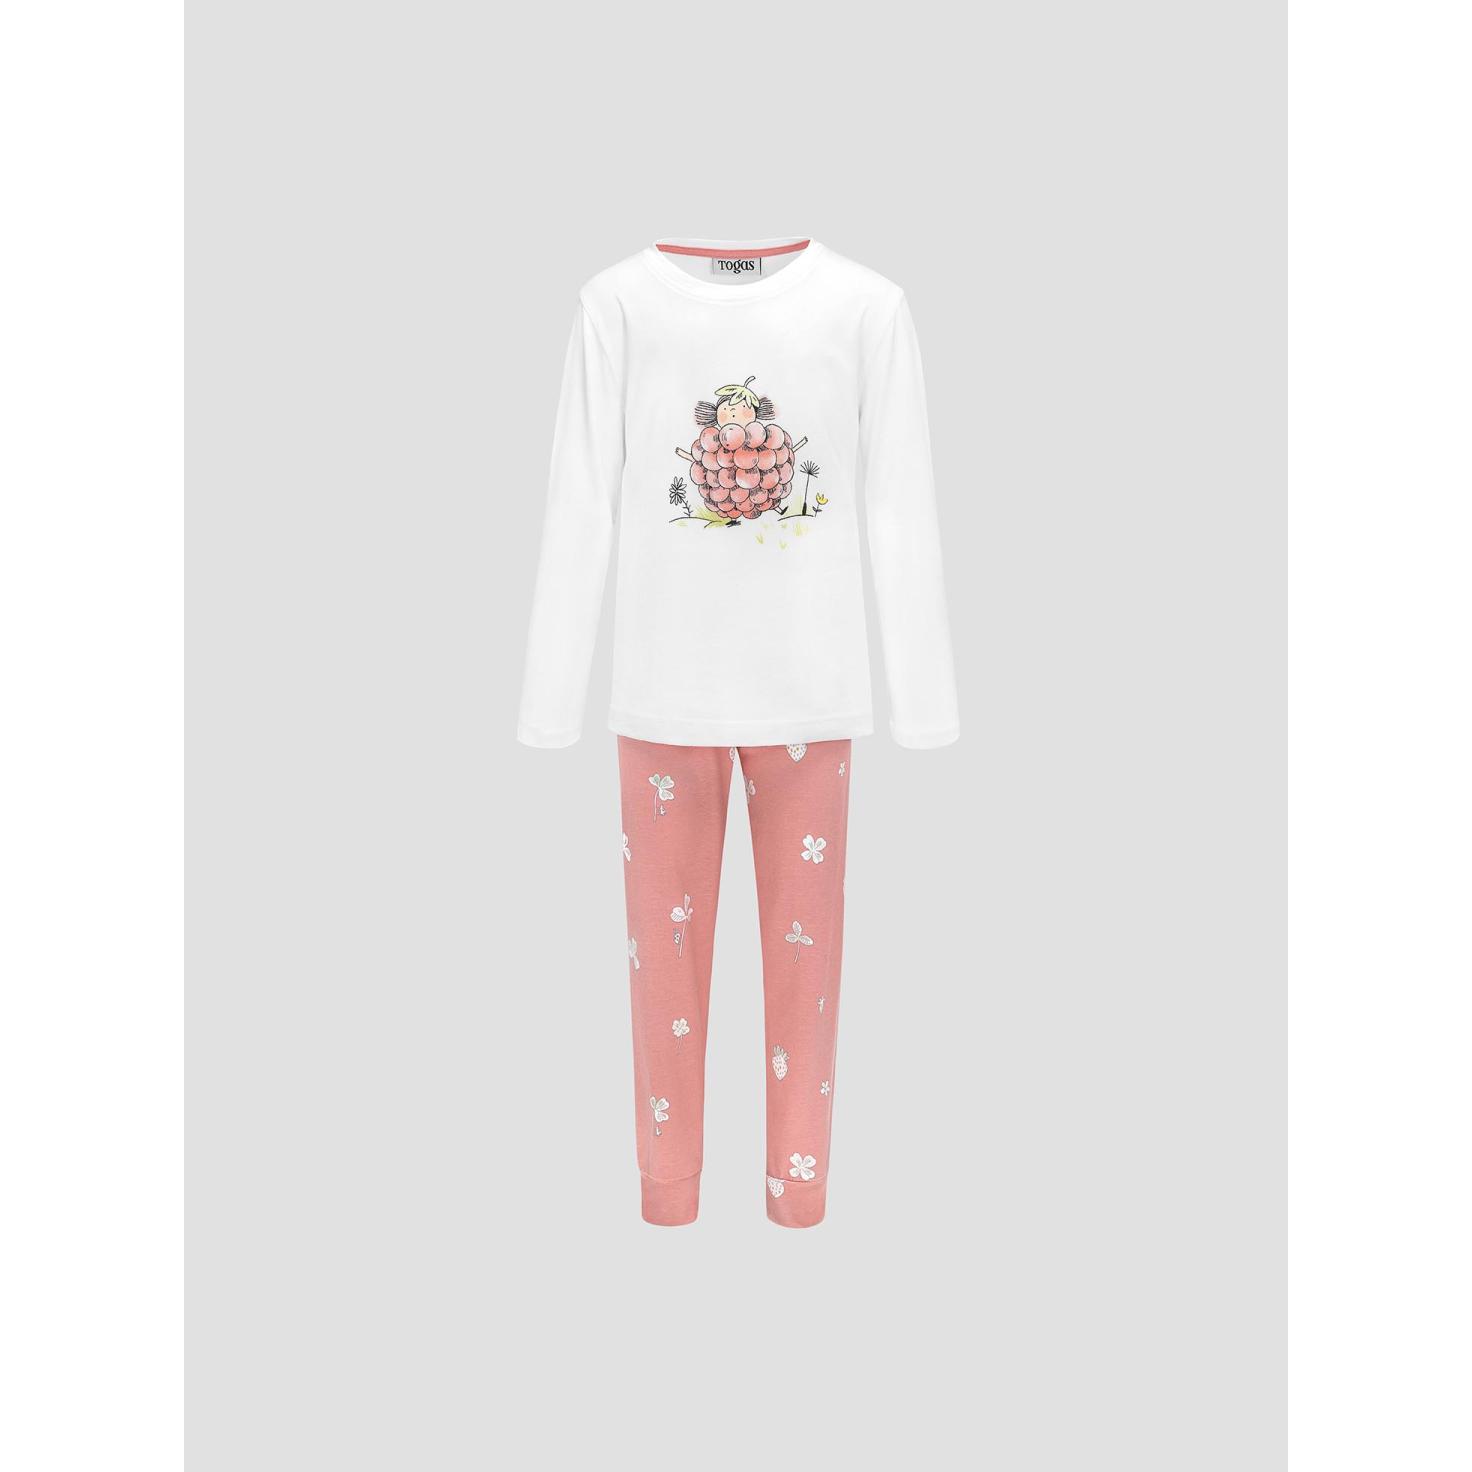 Пижама для девочек Kids by togas Стробби бело-розовый 128-134 см жен пижама с шортами инь янь белый р 52